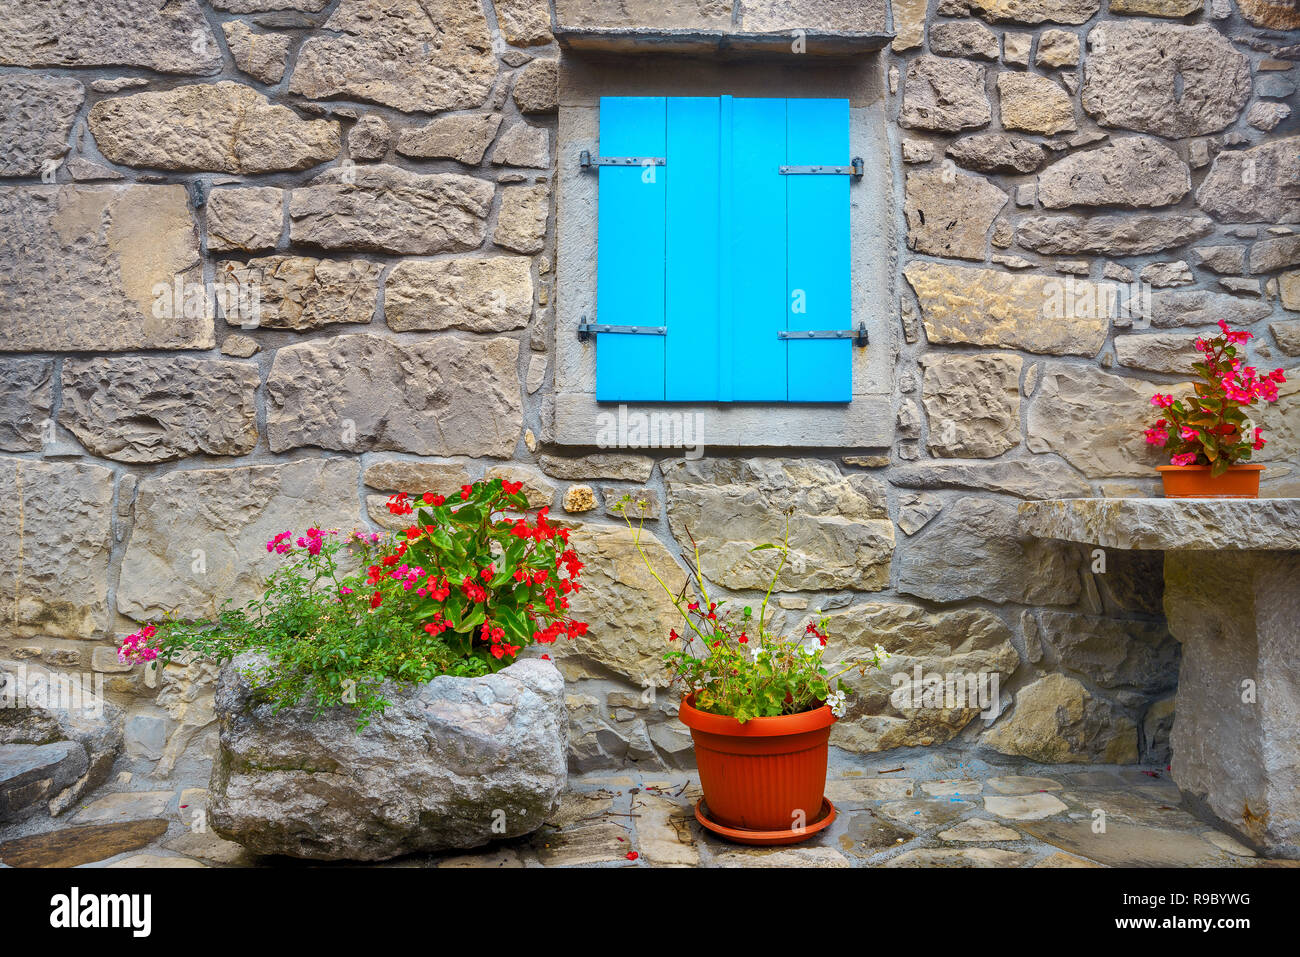 La facciata della vecchia casa con muro di pietra e di legno finestra blu, decorato fiori in vasi da fiori. Hum, Croazia Foto Stock